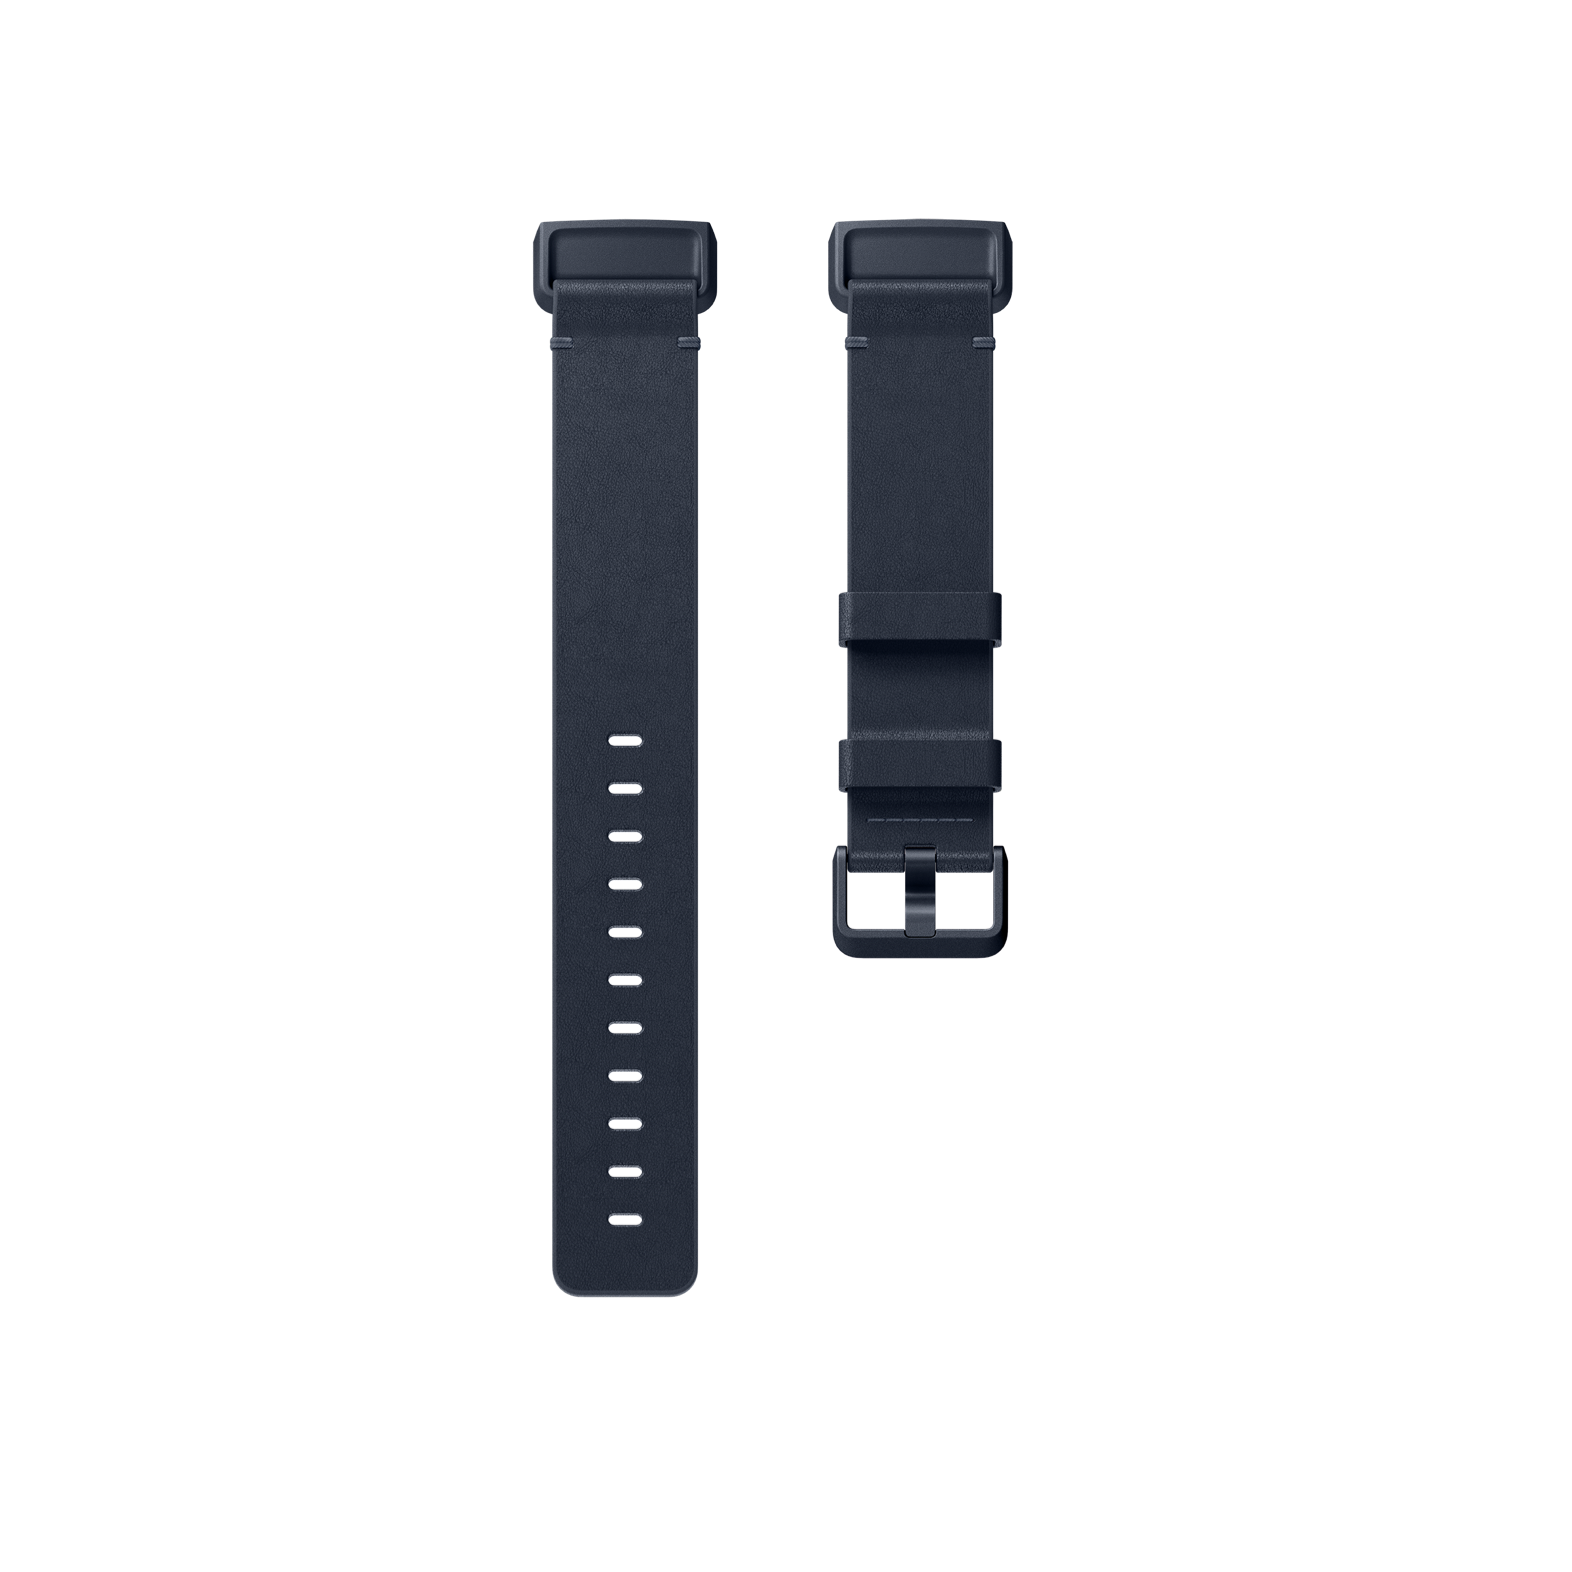 Marron+Adaptateur Noir Bracelet de Remplacement Ajustable Classique Compatible pour Fitbit Charge 3, WFEAGL Bracelet Compatible pour Fitbit Charge 3 Bracelet Cuir